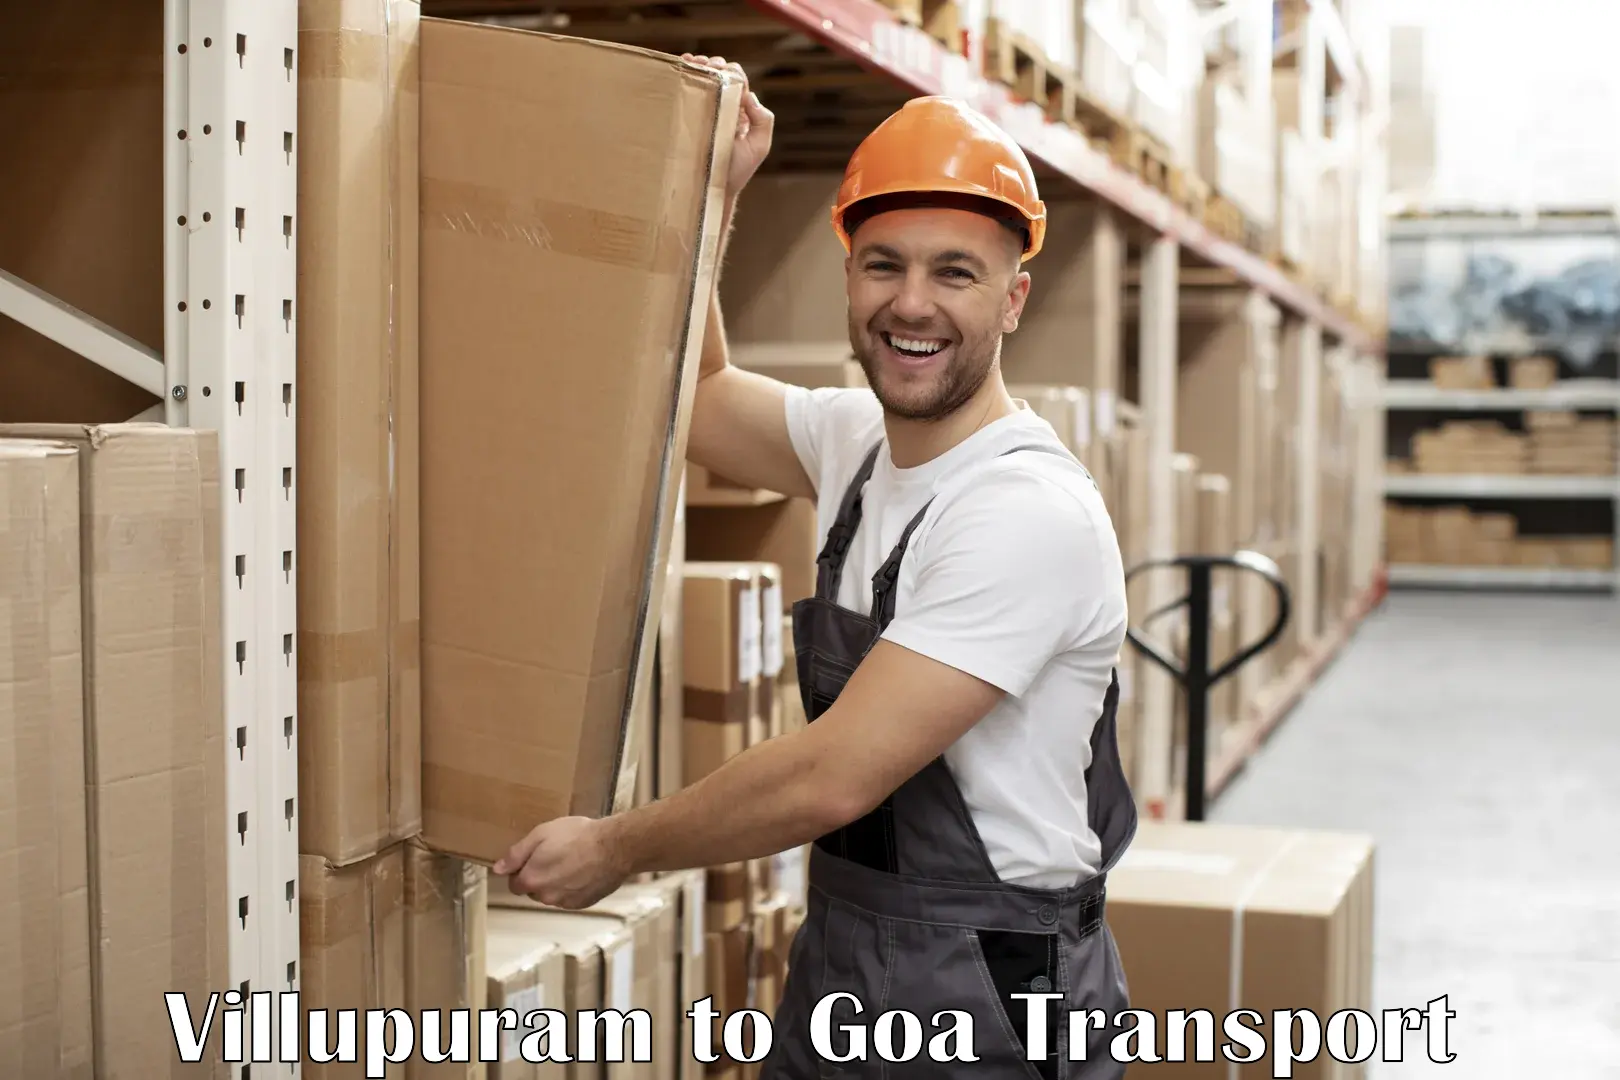 Daily transport service Villupuram to South Goa